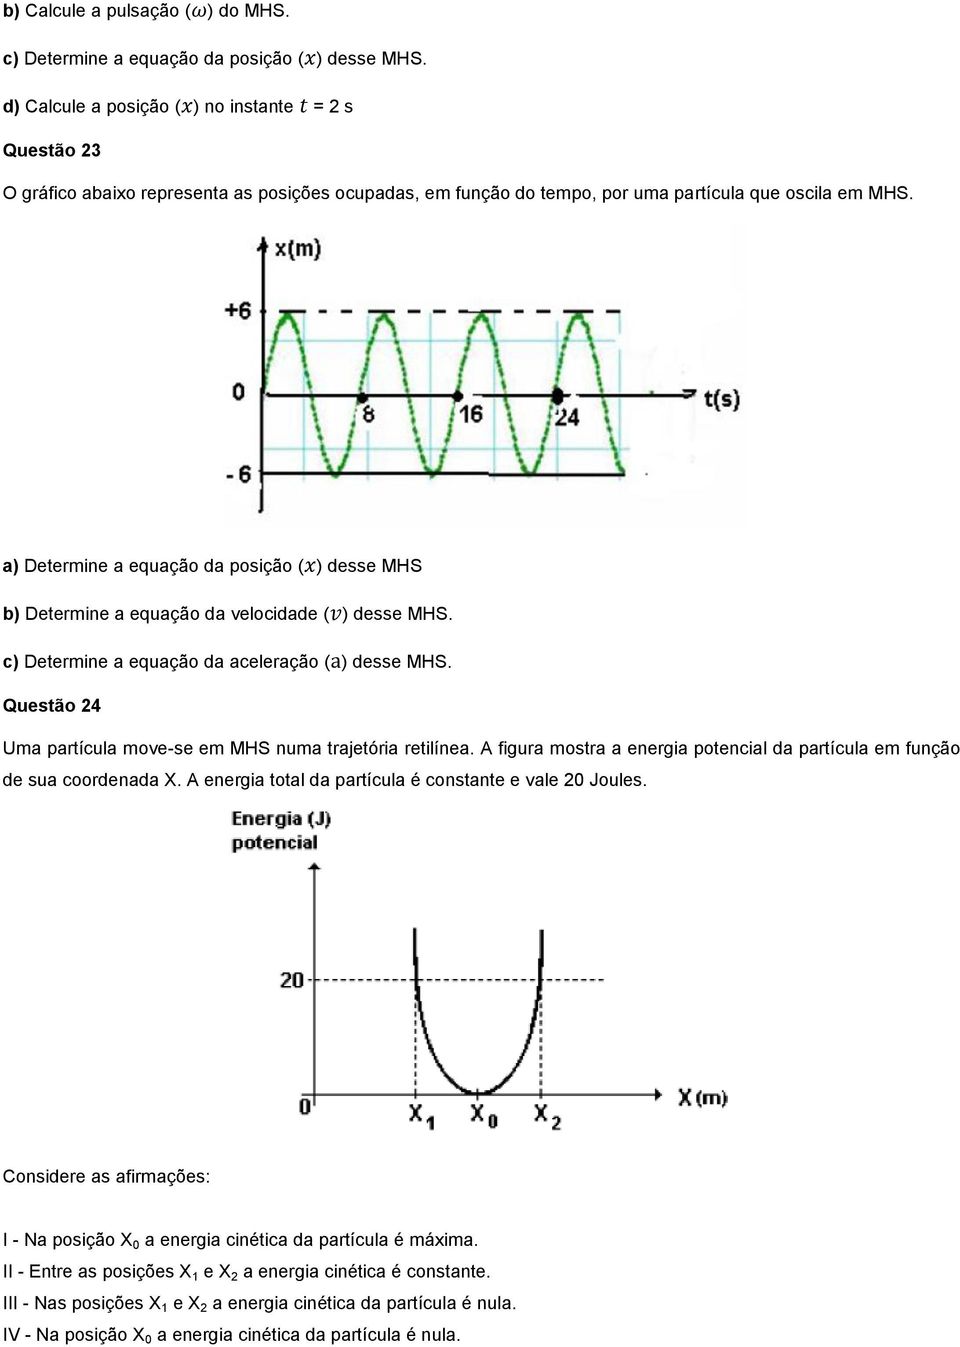 a) Determine a equação da posição ( ) desse MHS b) Determine a equação da velocidade ( ) desse MHS. c) Determine a equação da aceleração ( ) desse MHS.